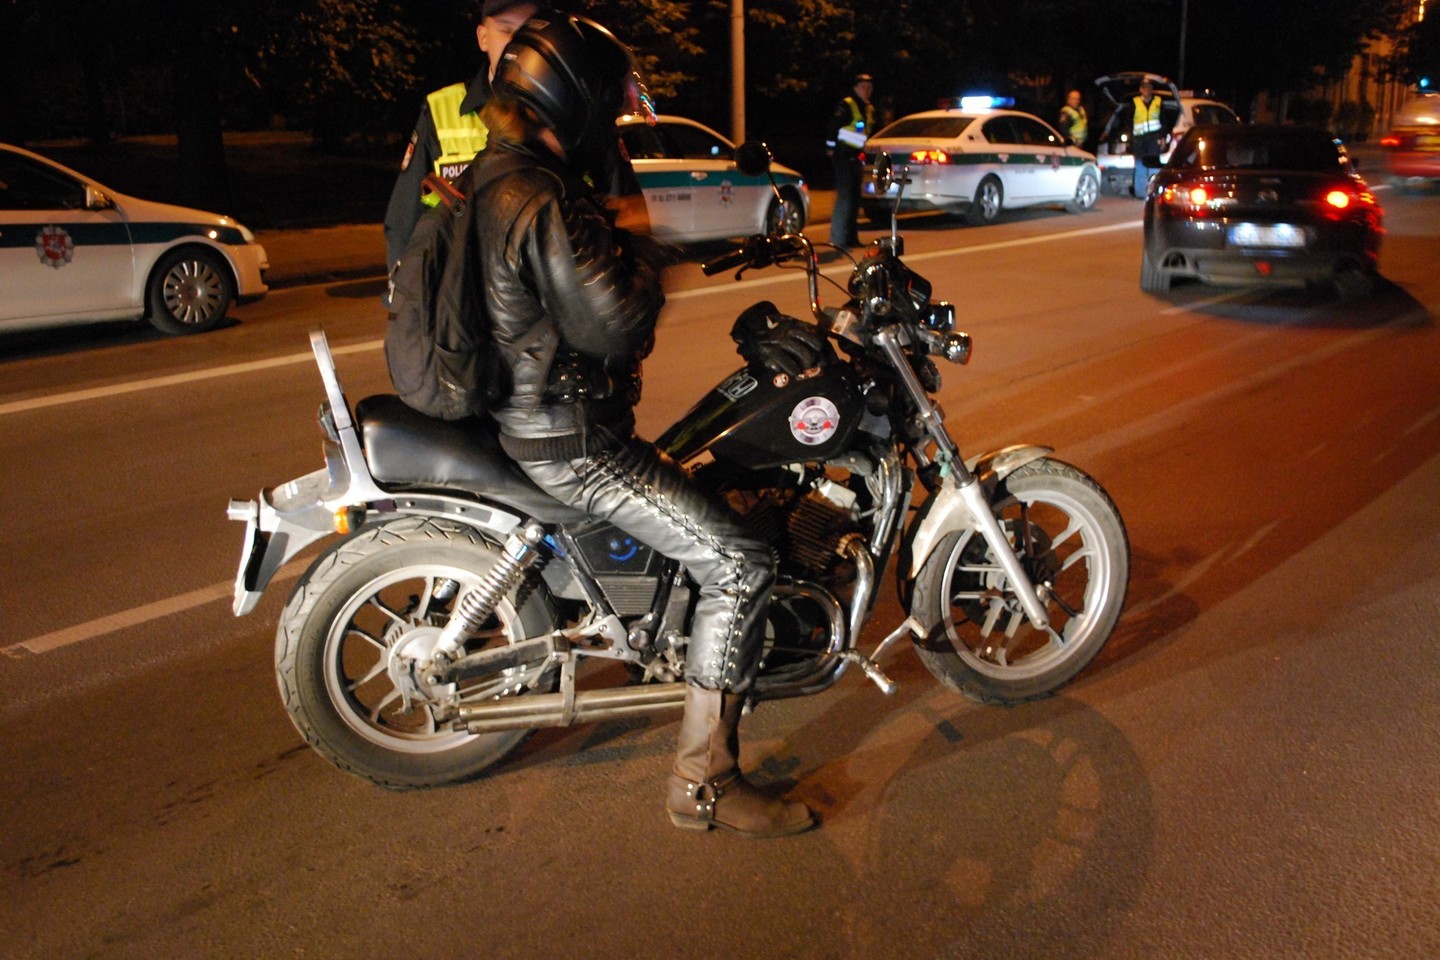 Po naktinį Vilnių važinėję motociklininkai taisyklių nepažeidė.<br>S. Rinkevičiaus nuotr.